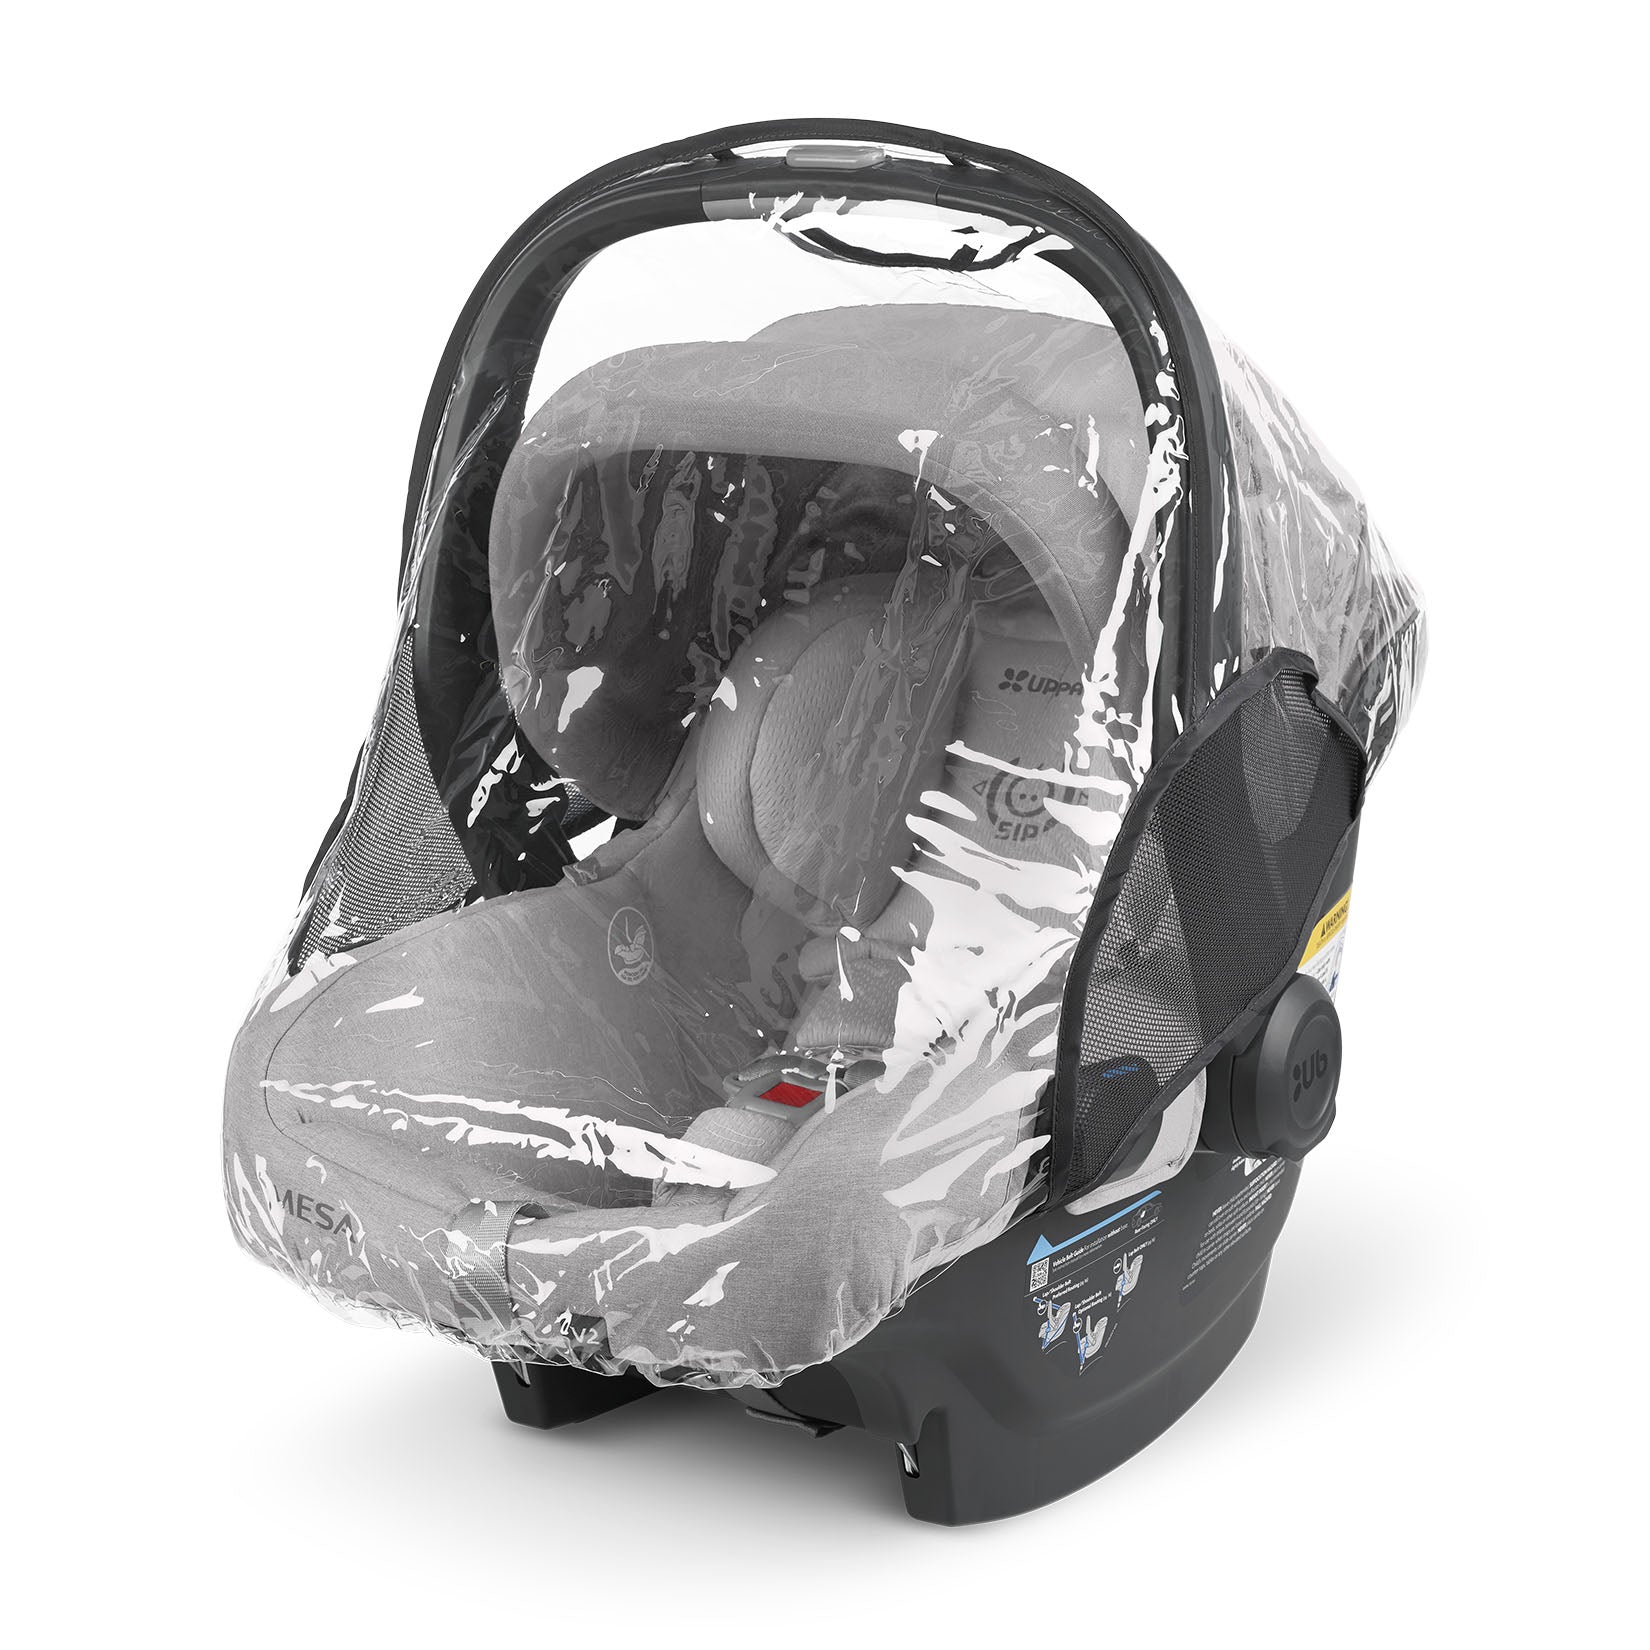 Melange Infant Car Seat Weather Shield (Navy)